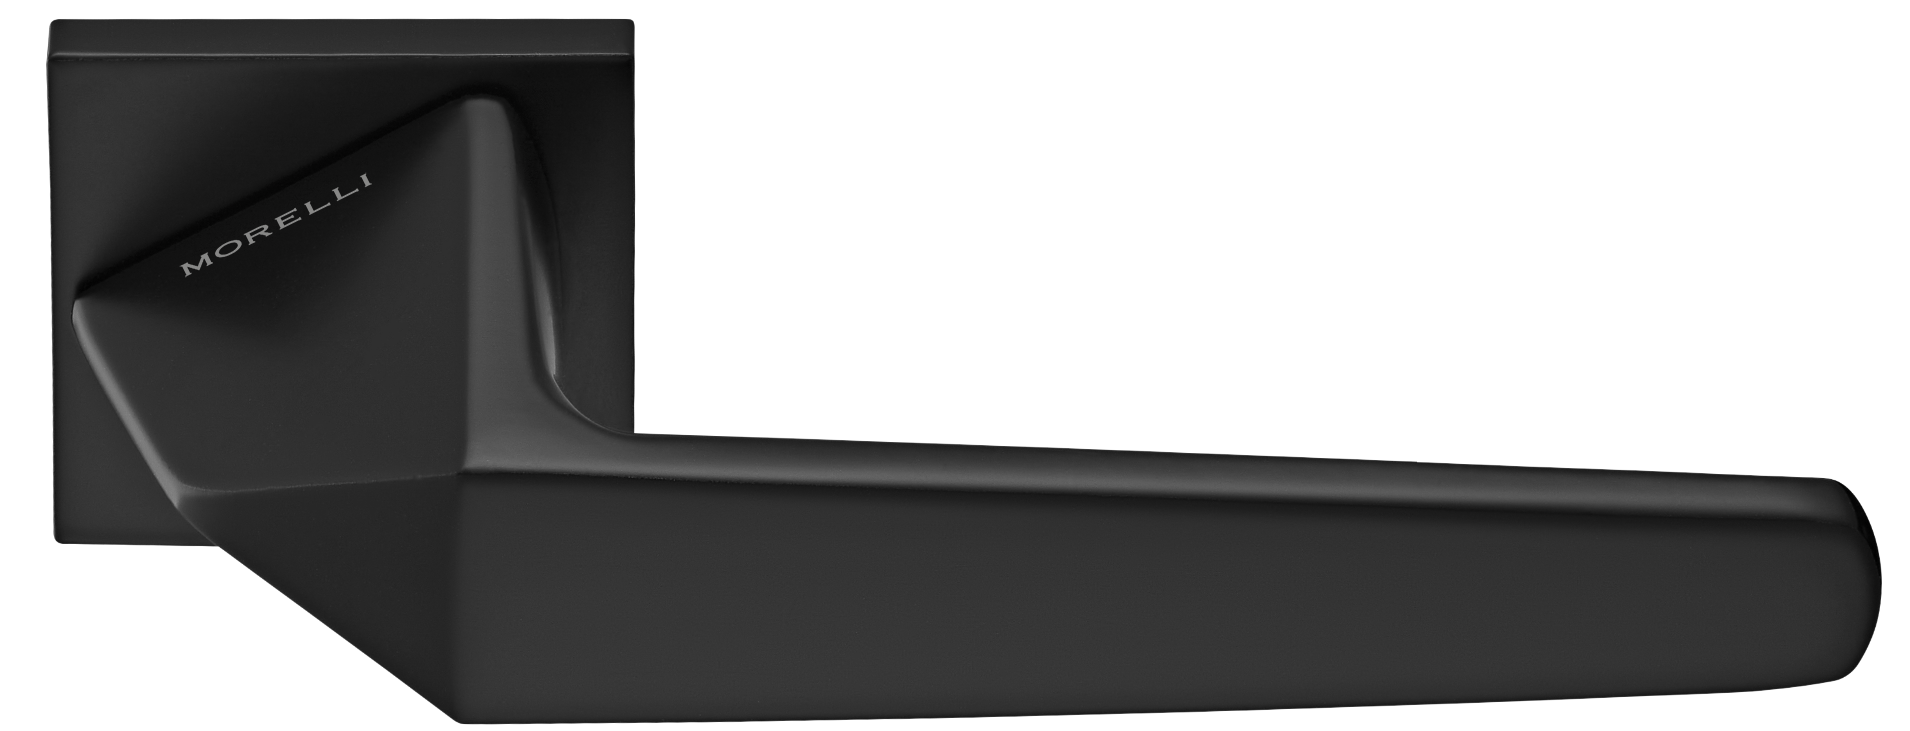 SOUK ручка дверная на квадратной розетке 6 мм, MH-55-S6 BL, цвет - черный фото купить Пенза